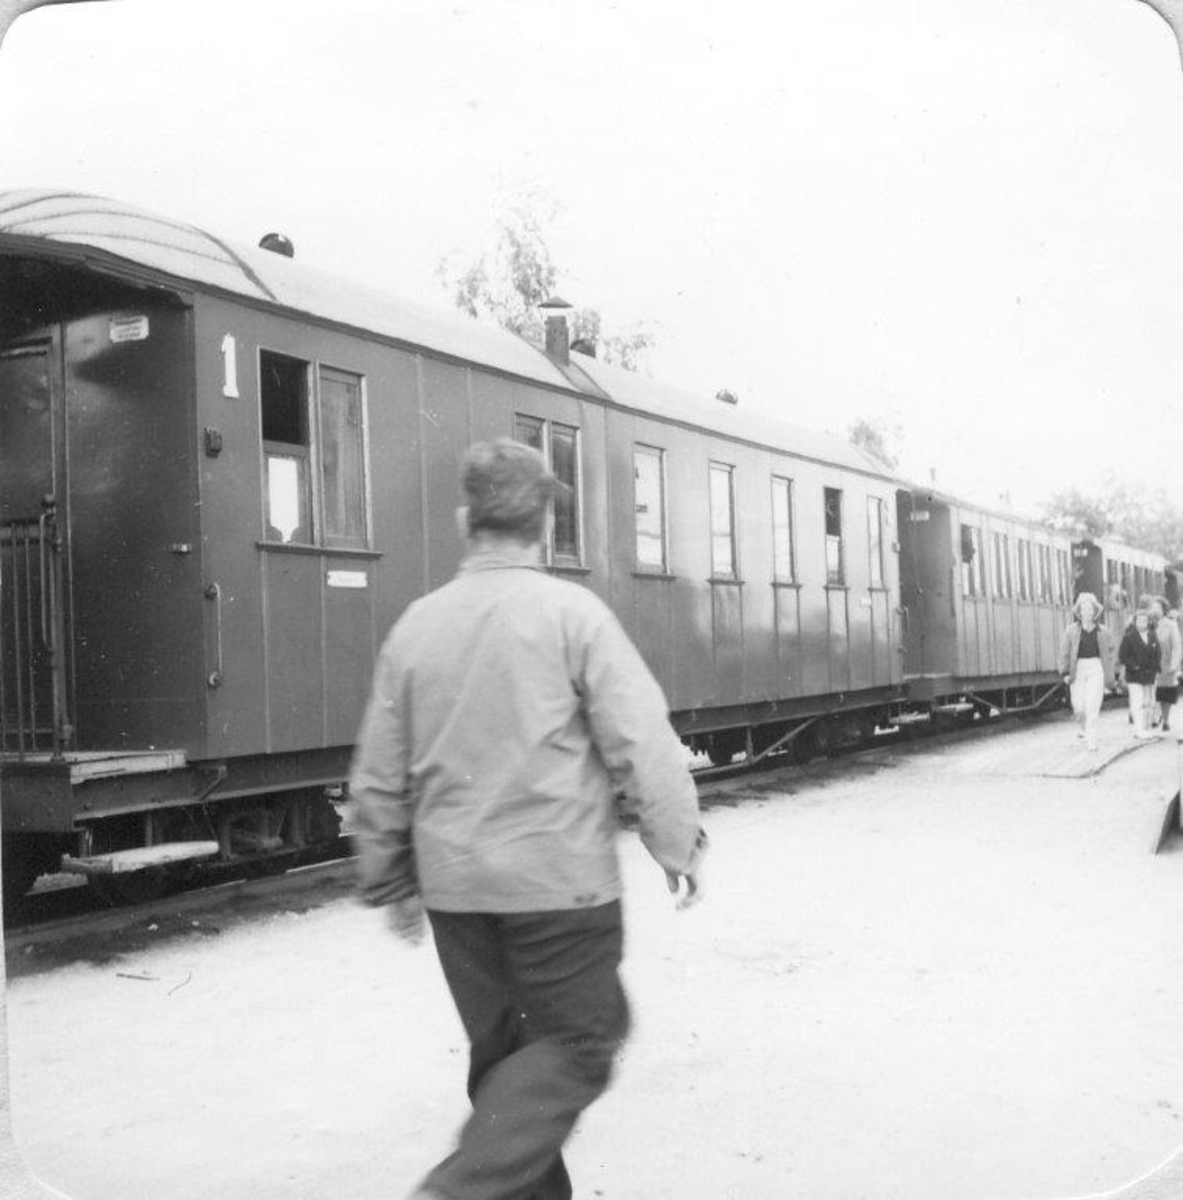 Mange reisende og skuelystne på Sørumsand stasjon på Tertittens siste driftsdag 30.06.1960.